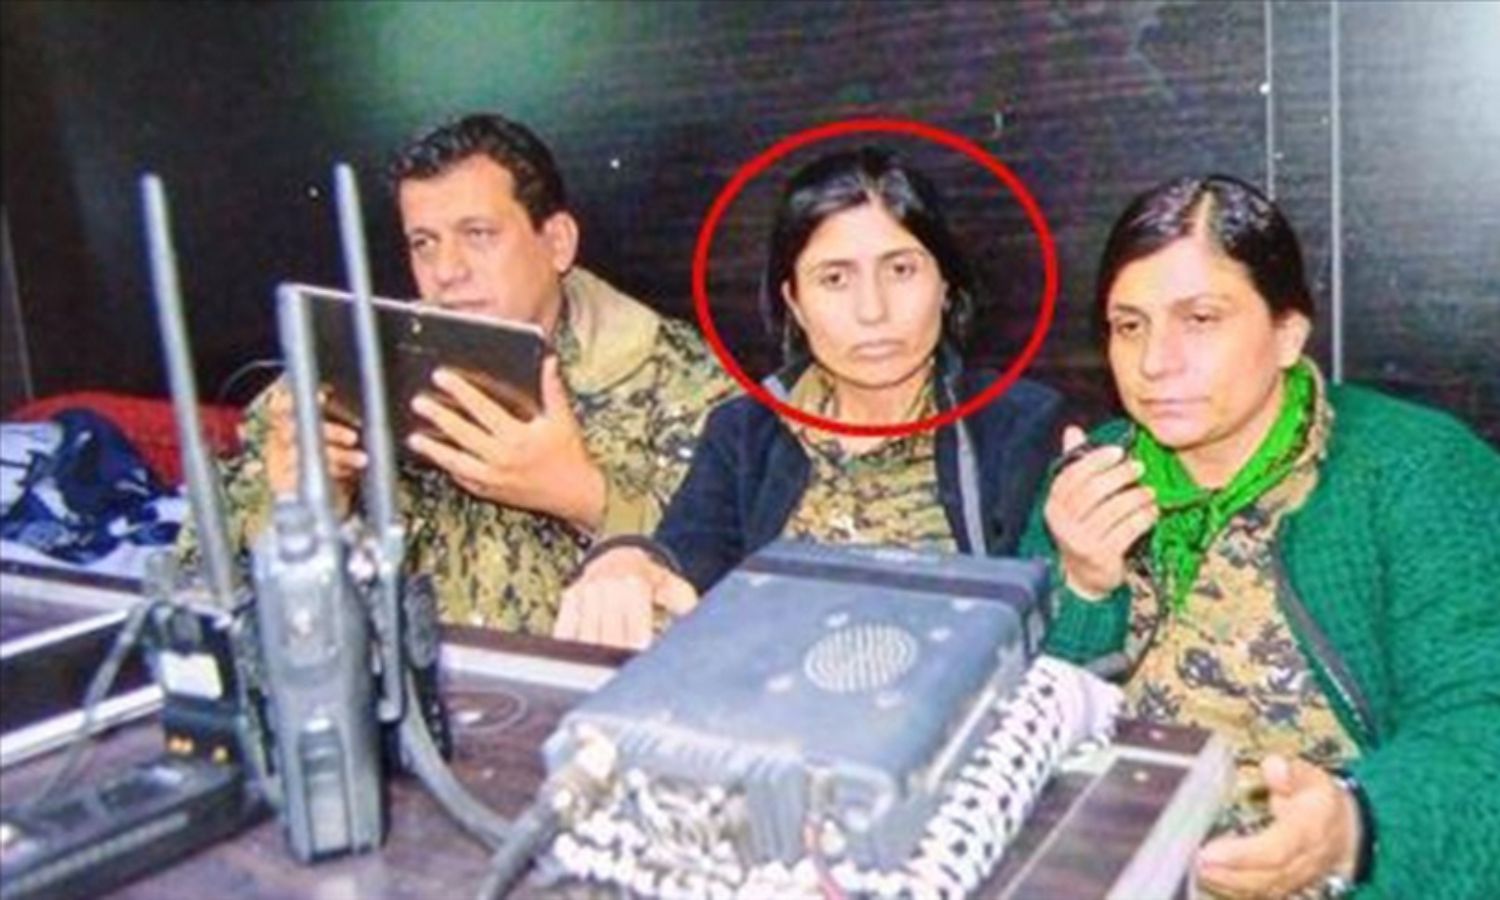 أومان درويش قيادية في "وحدات حماية الشعب" (YPG)، و"وحدات حماية المرأة" (YPJ) (الأناضول)